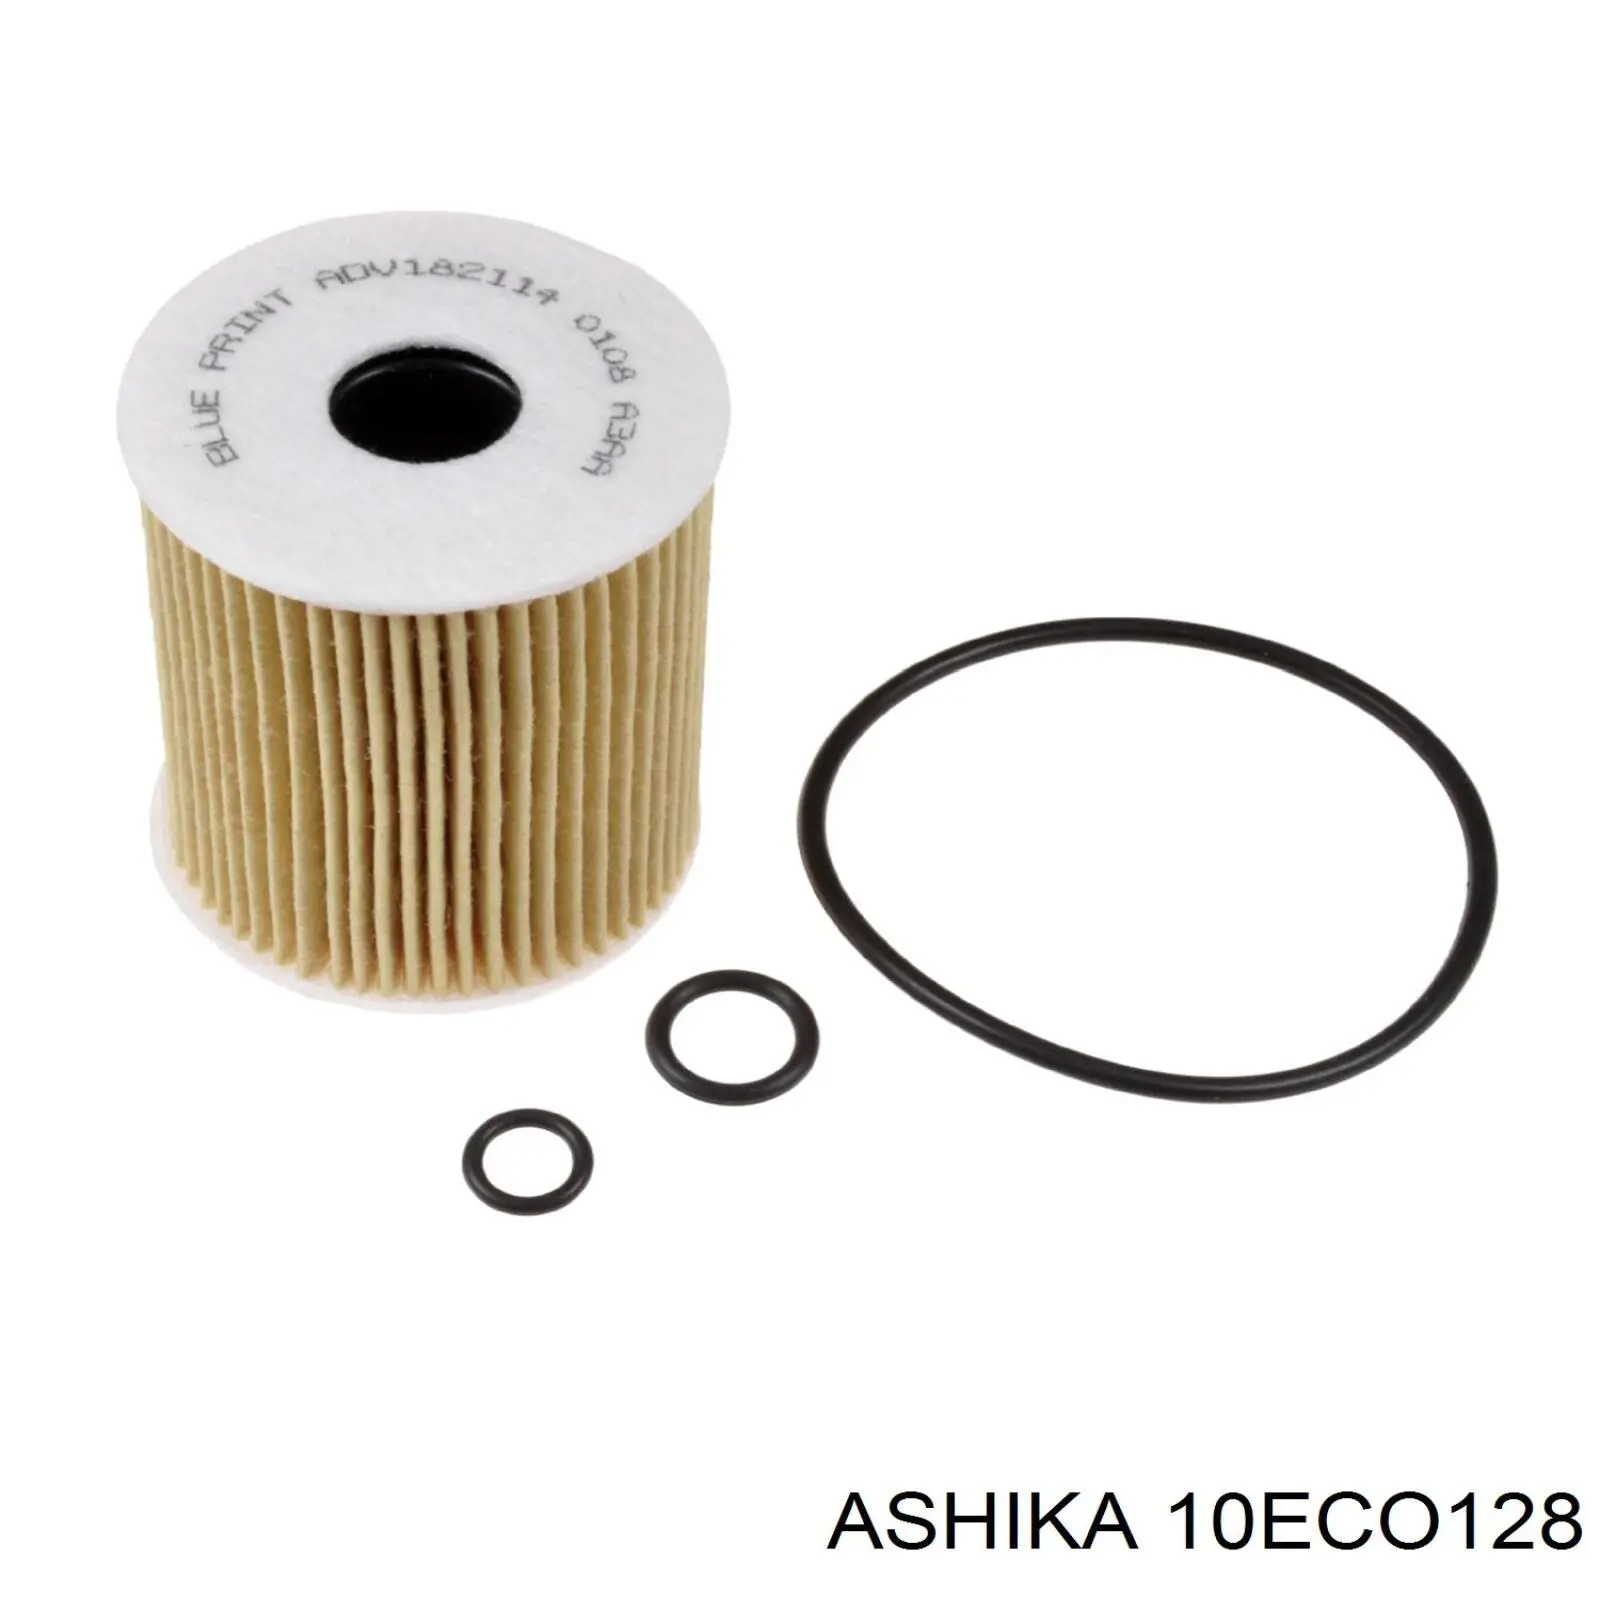 10-ECO128 Ashika filtro de aceite